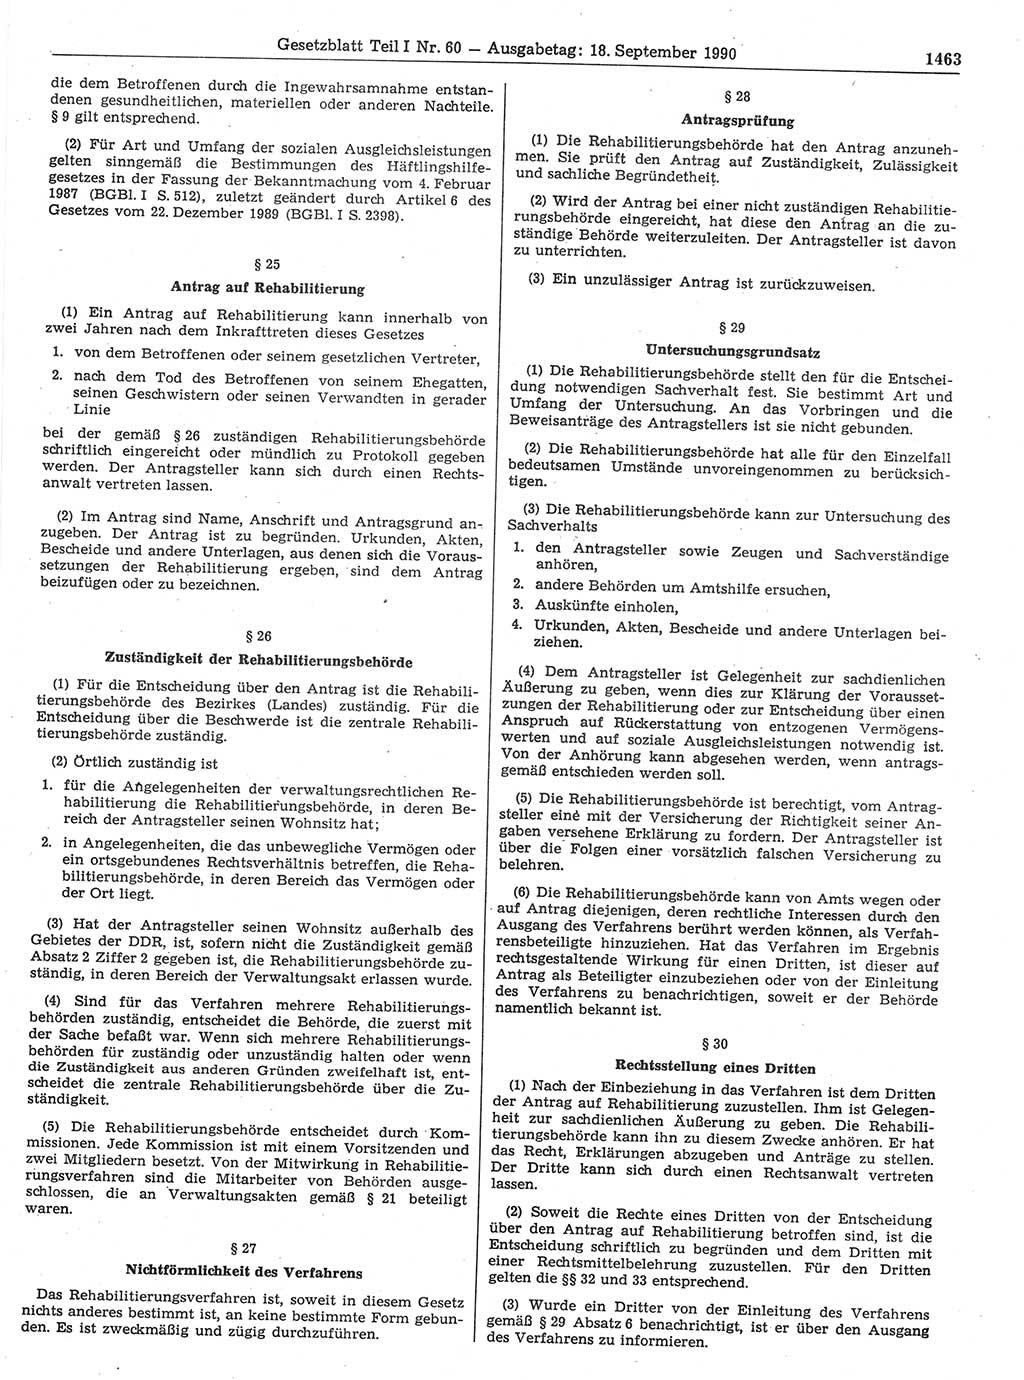 Gesetzblatt (GBl.) der Deutschen Demokratischen Republik (DDR) Teil Ⅰ 1990, Seite 1463 (GBl. DDR Ⅰ 1990, S. 1463)